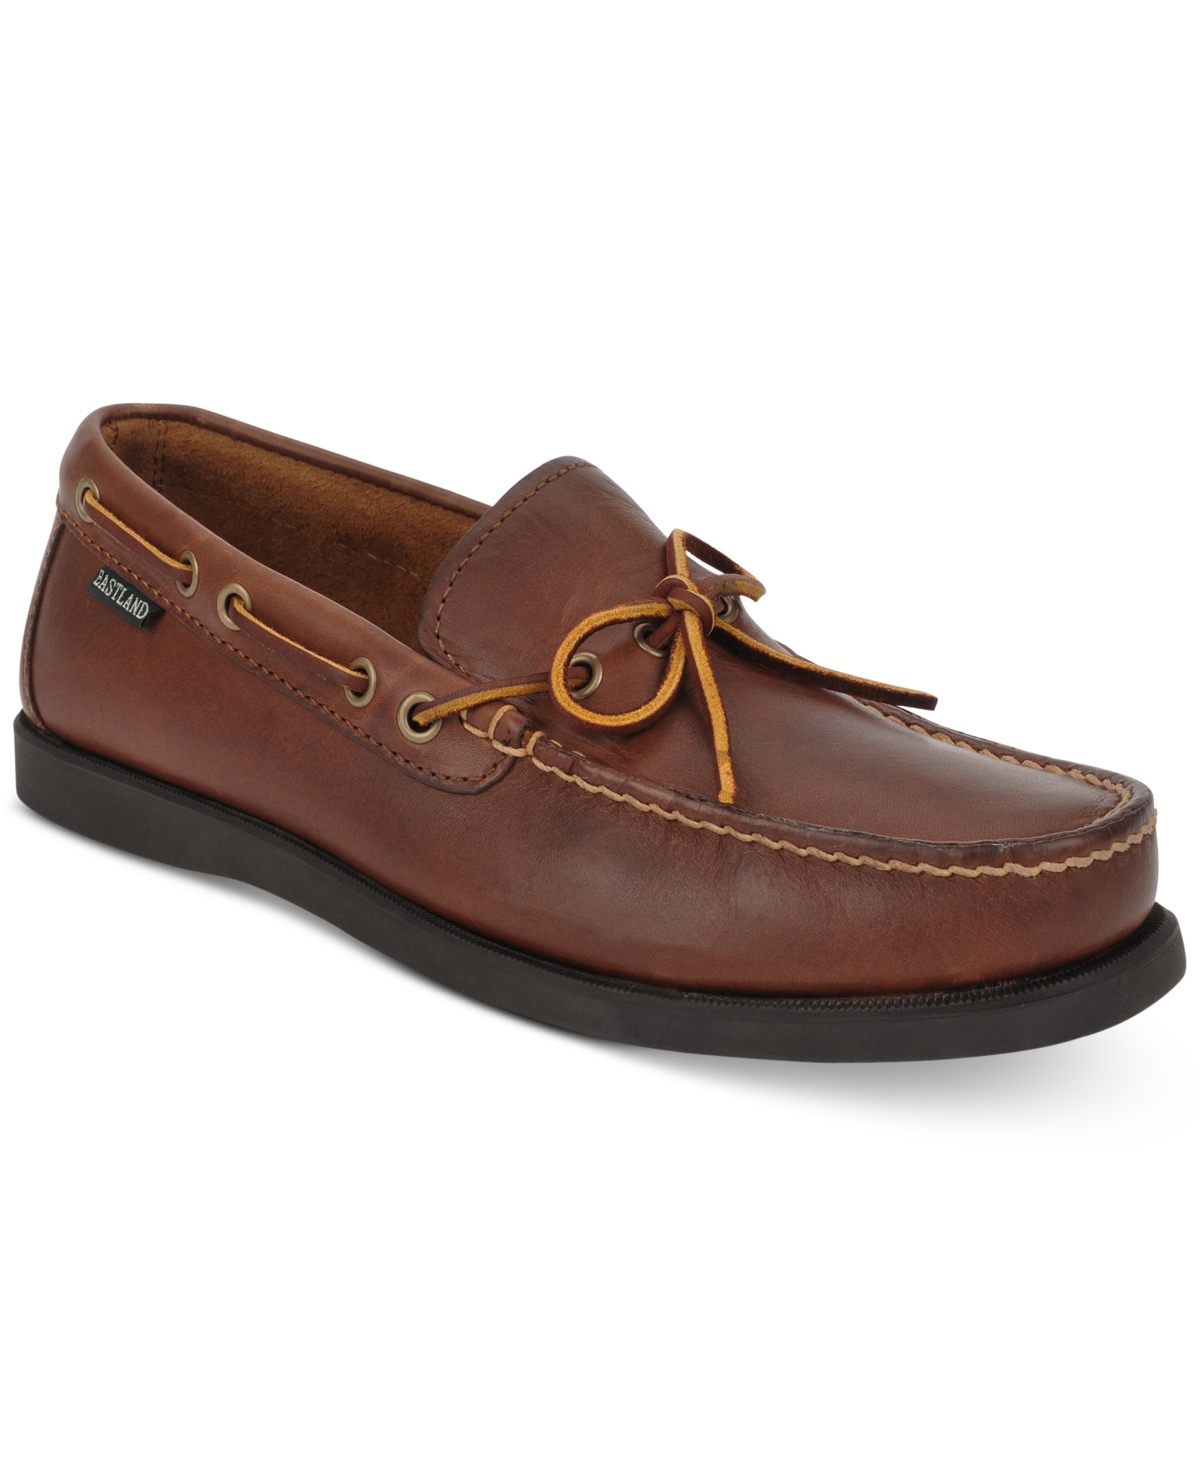 Men's Yarmouth Boat Shoes - Tan